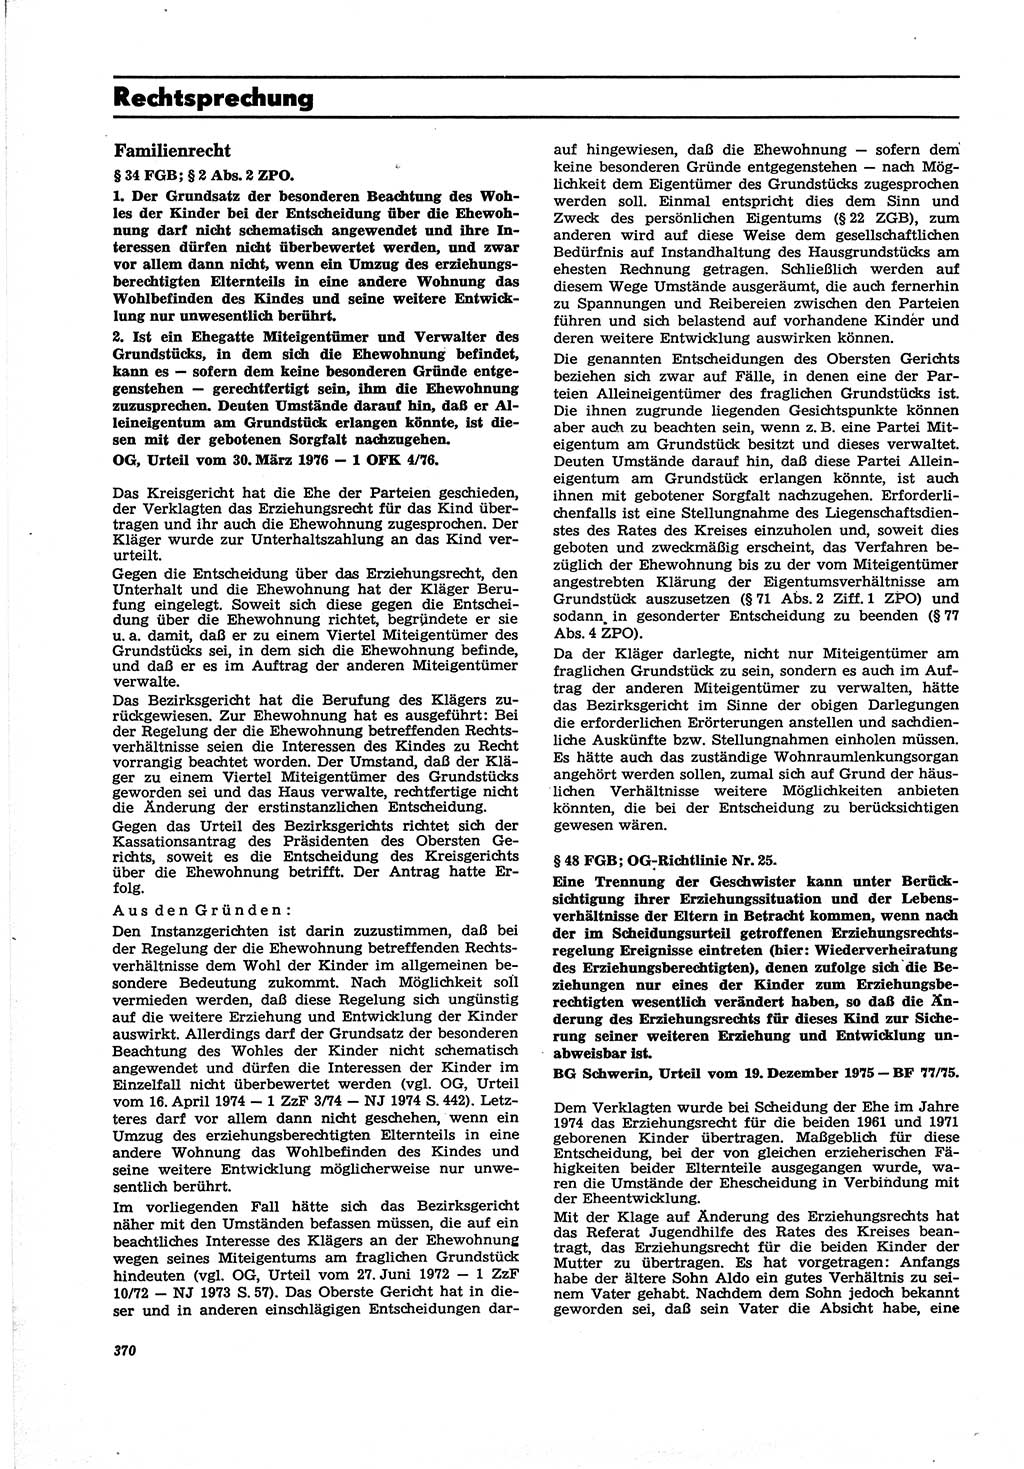 Neue Justiz (NJ), Zeitschrift für Recht und Rechtswissenschaft [Deutsche Demokratische Republik (DDR)], 30. Jahrgang 1976, Seite 370 (NJ DDR 1976, S. 370)